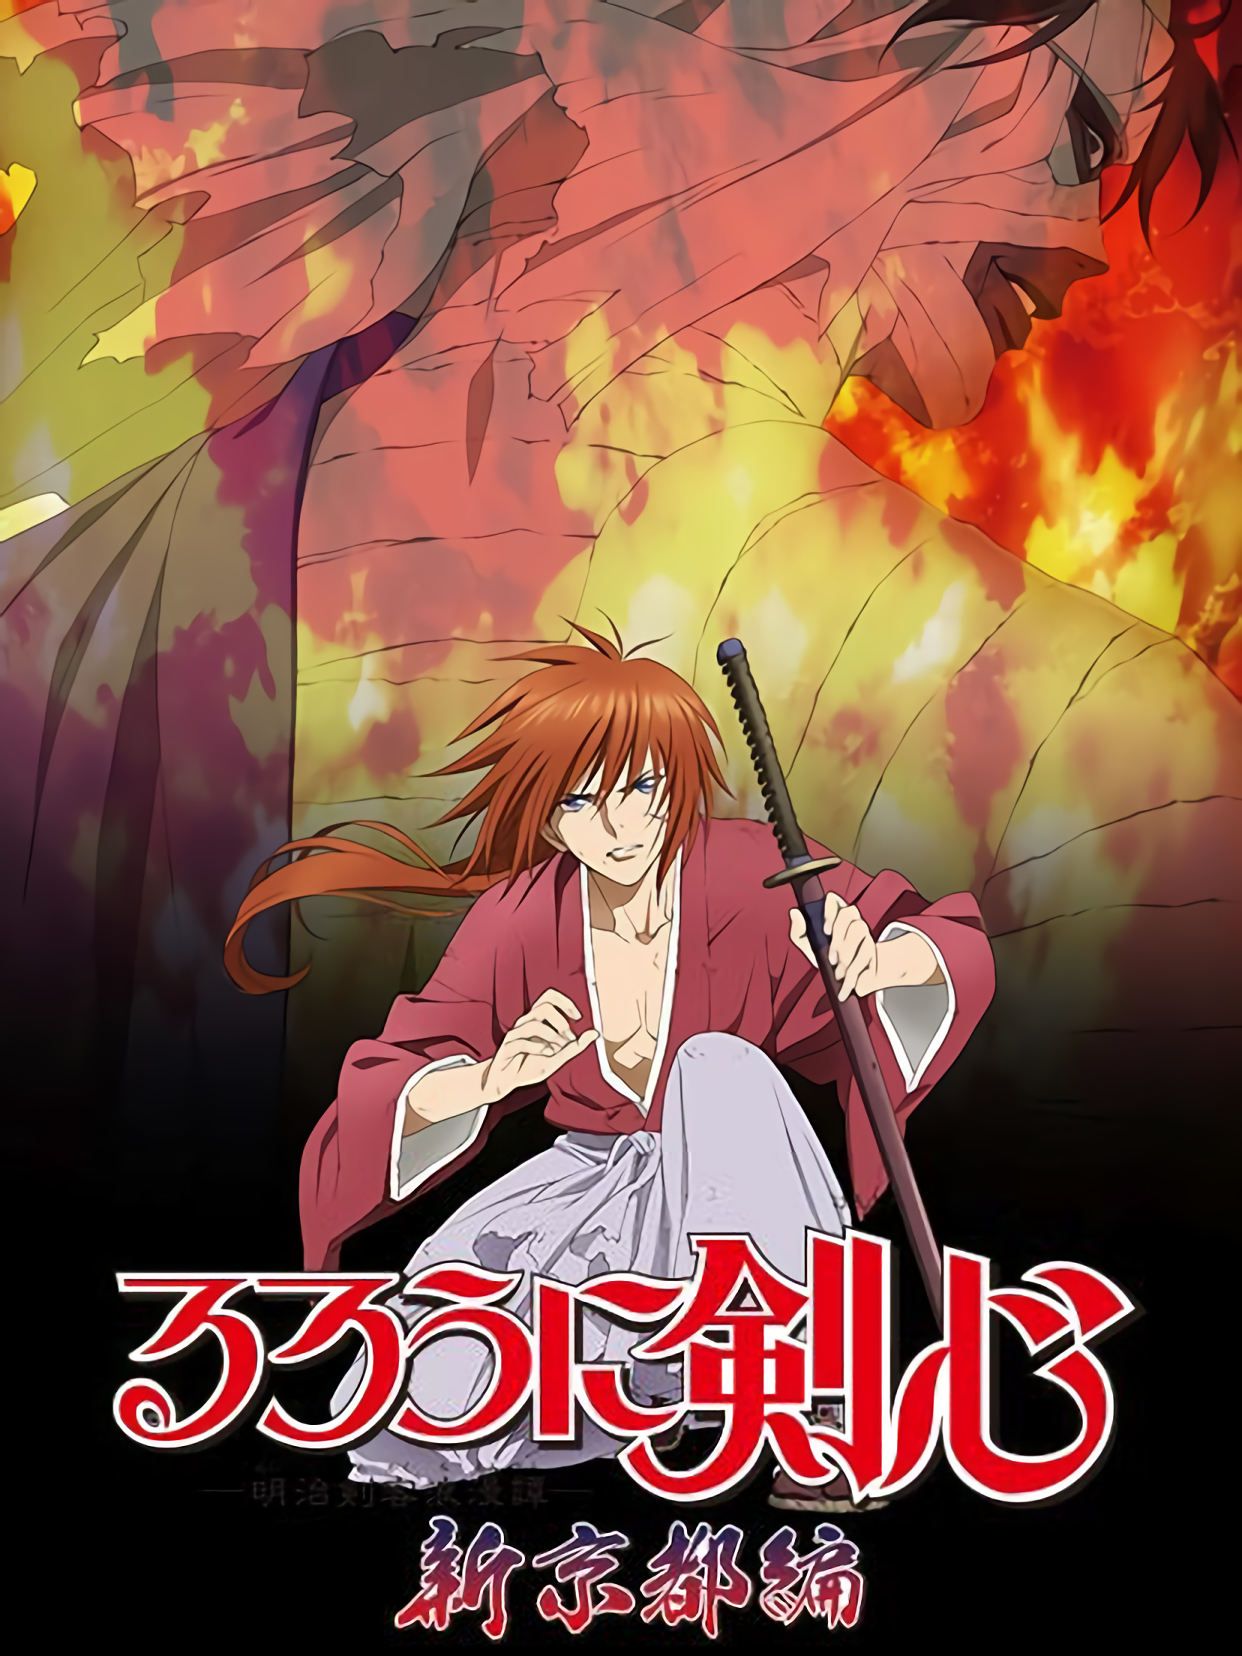 Xem Phim Lãng khách Kenshin: Kinh đô mới (るろうに剣心 -明治剣客浪漫譚- 新京都編)